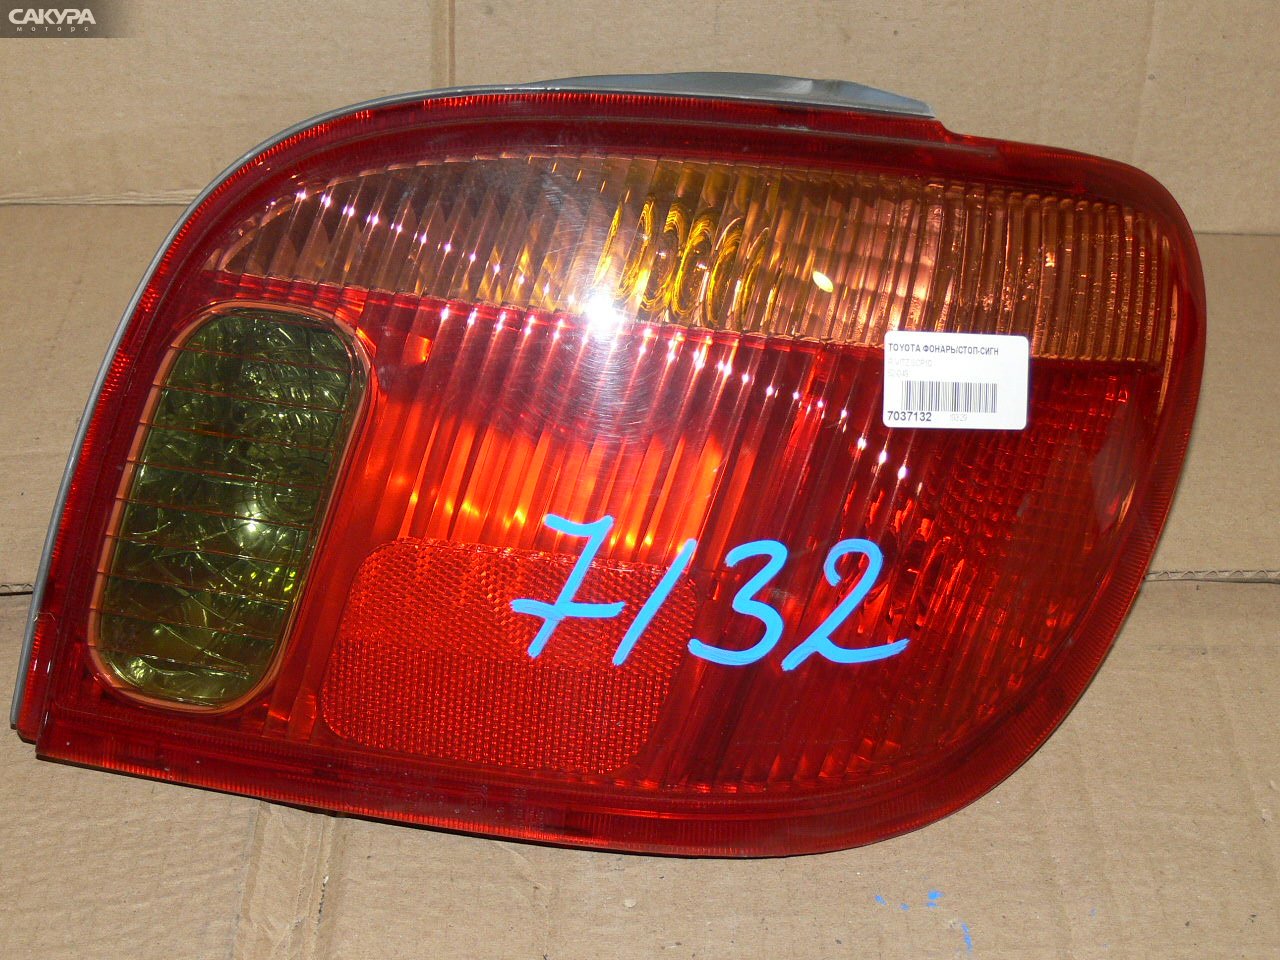 Фонарь стоп-сигнала правый Toyota Vitz SCP10 52-049: купить в Сакура Иркутск.